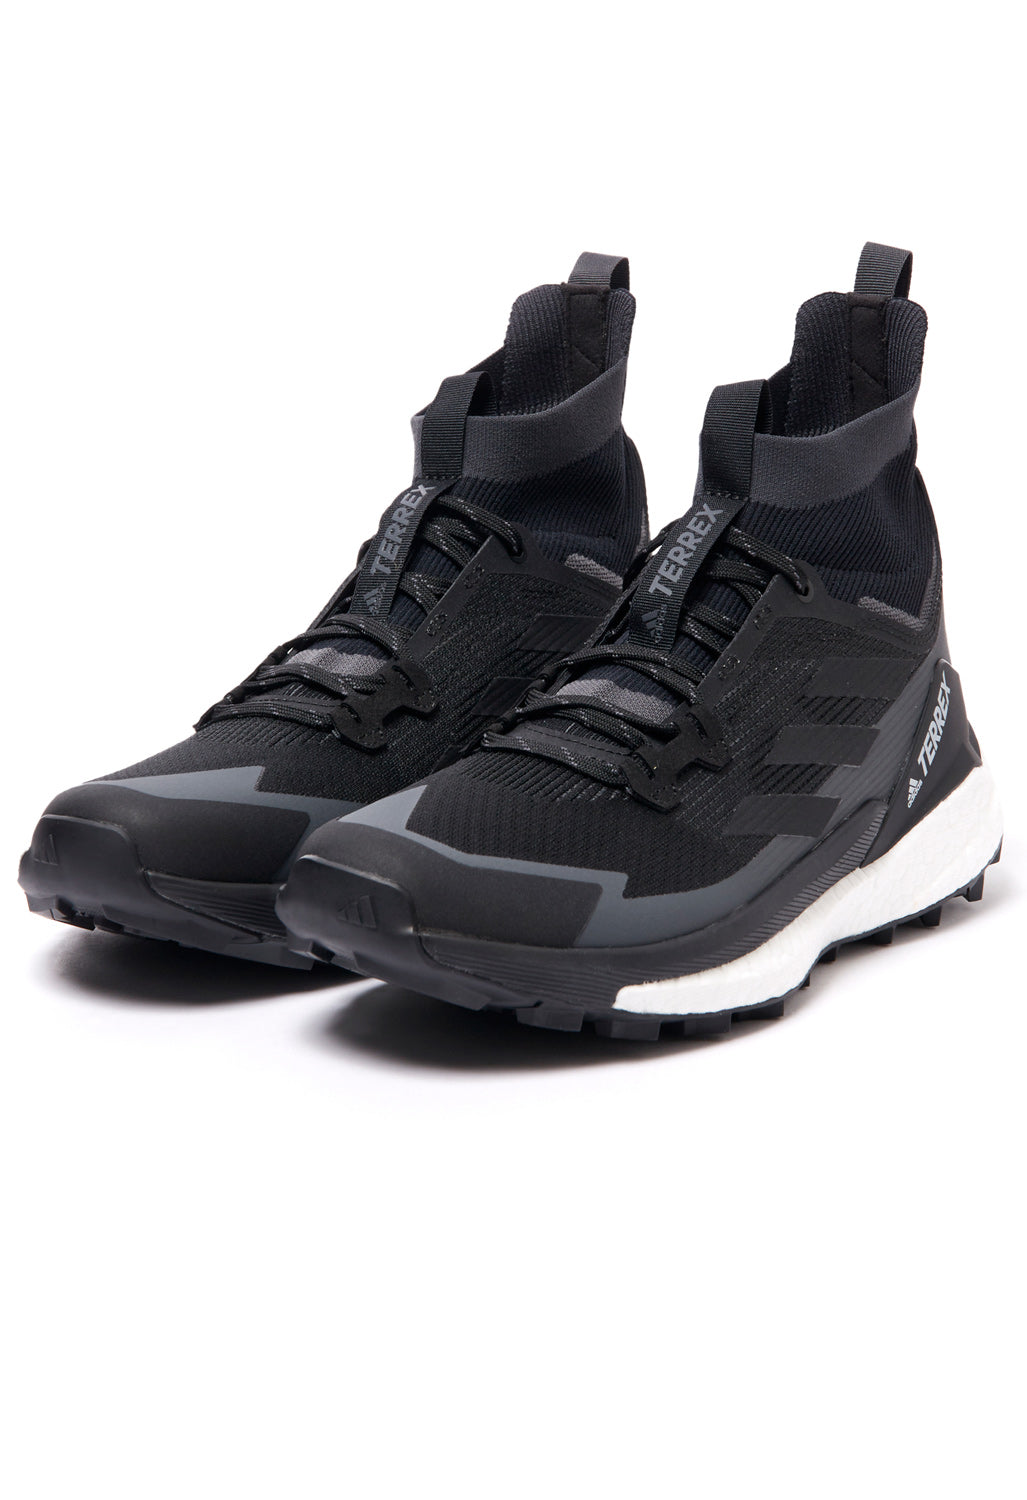 adidas TERREX Free Hiker 2 Men's Boots - Core Black/Grey Six/Carbon